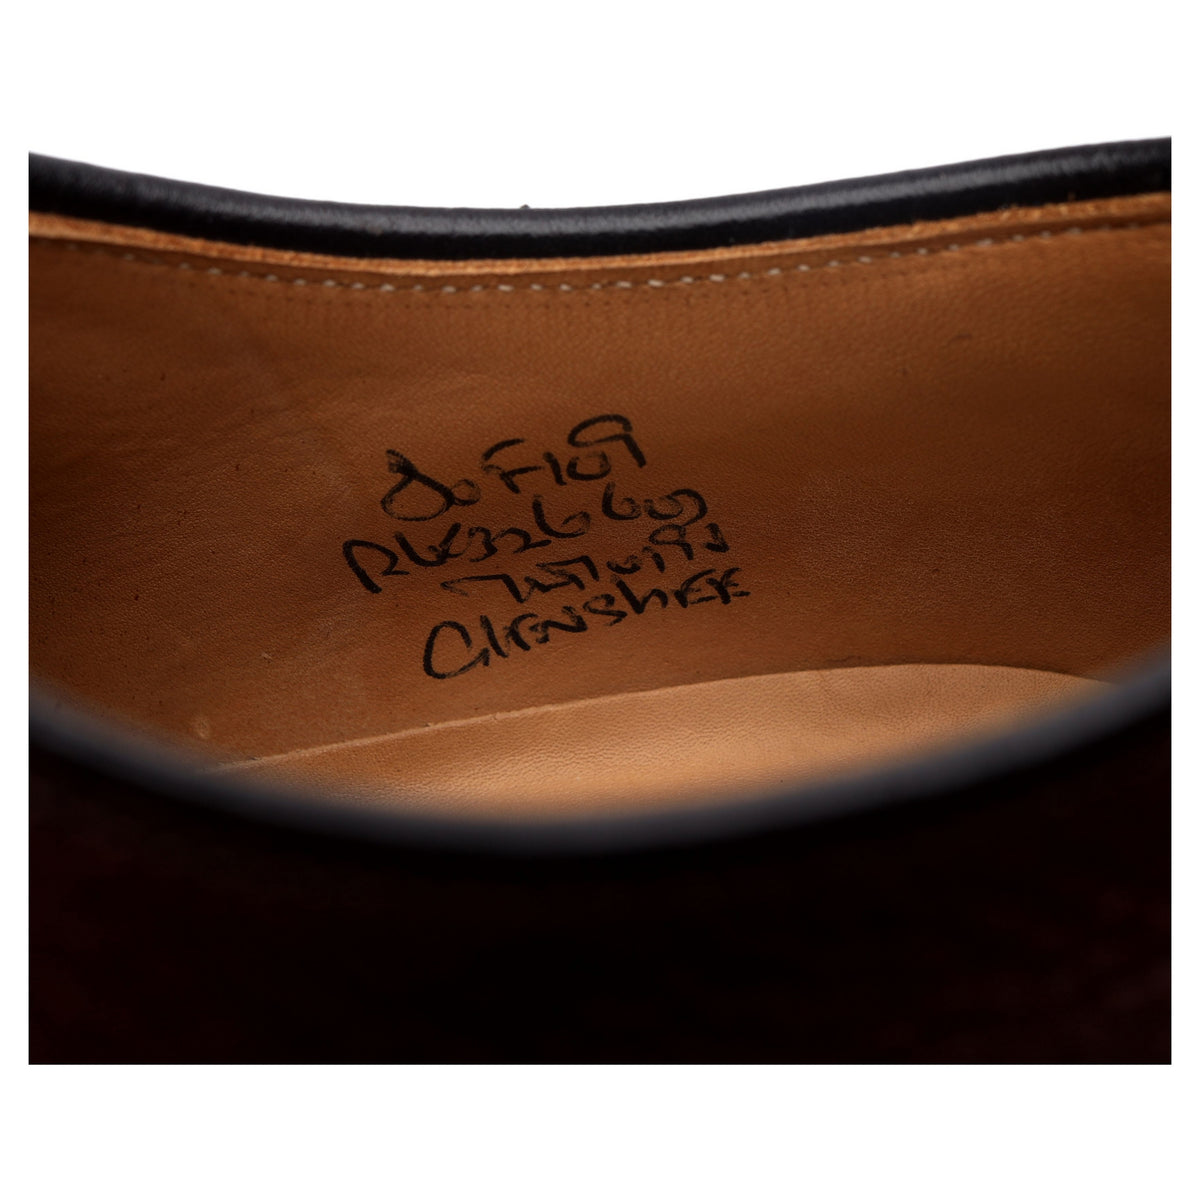 &#39;Glenshee&#39; Dark Brown Veldschoen Leather Apron Derby UK 8 F